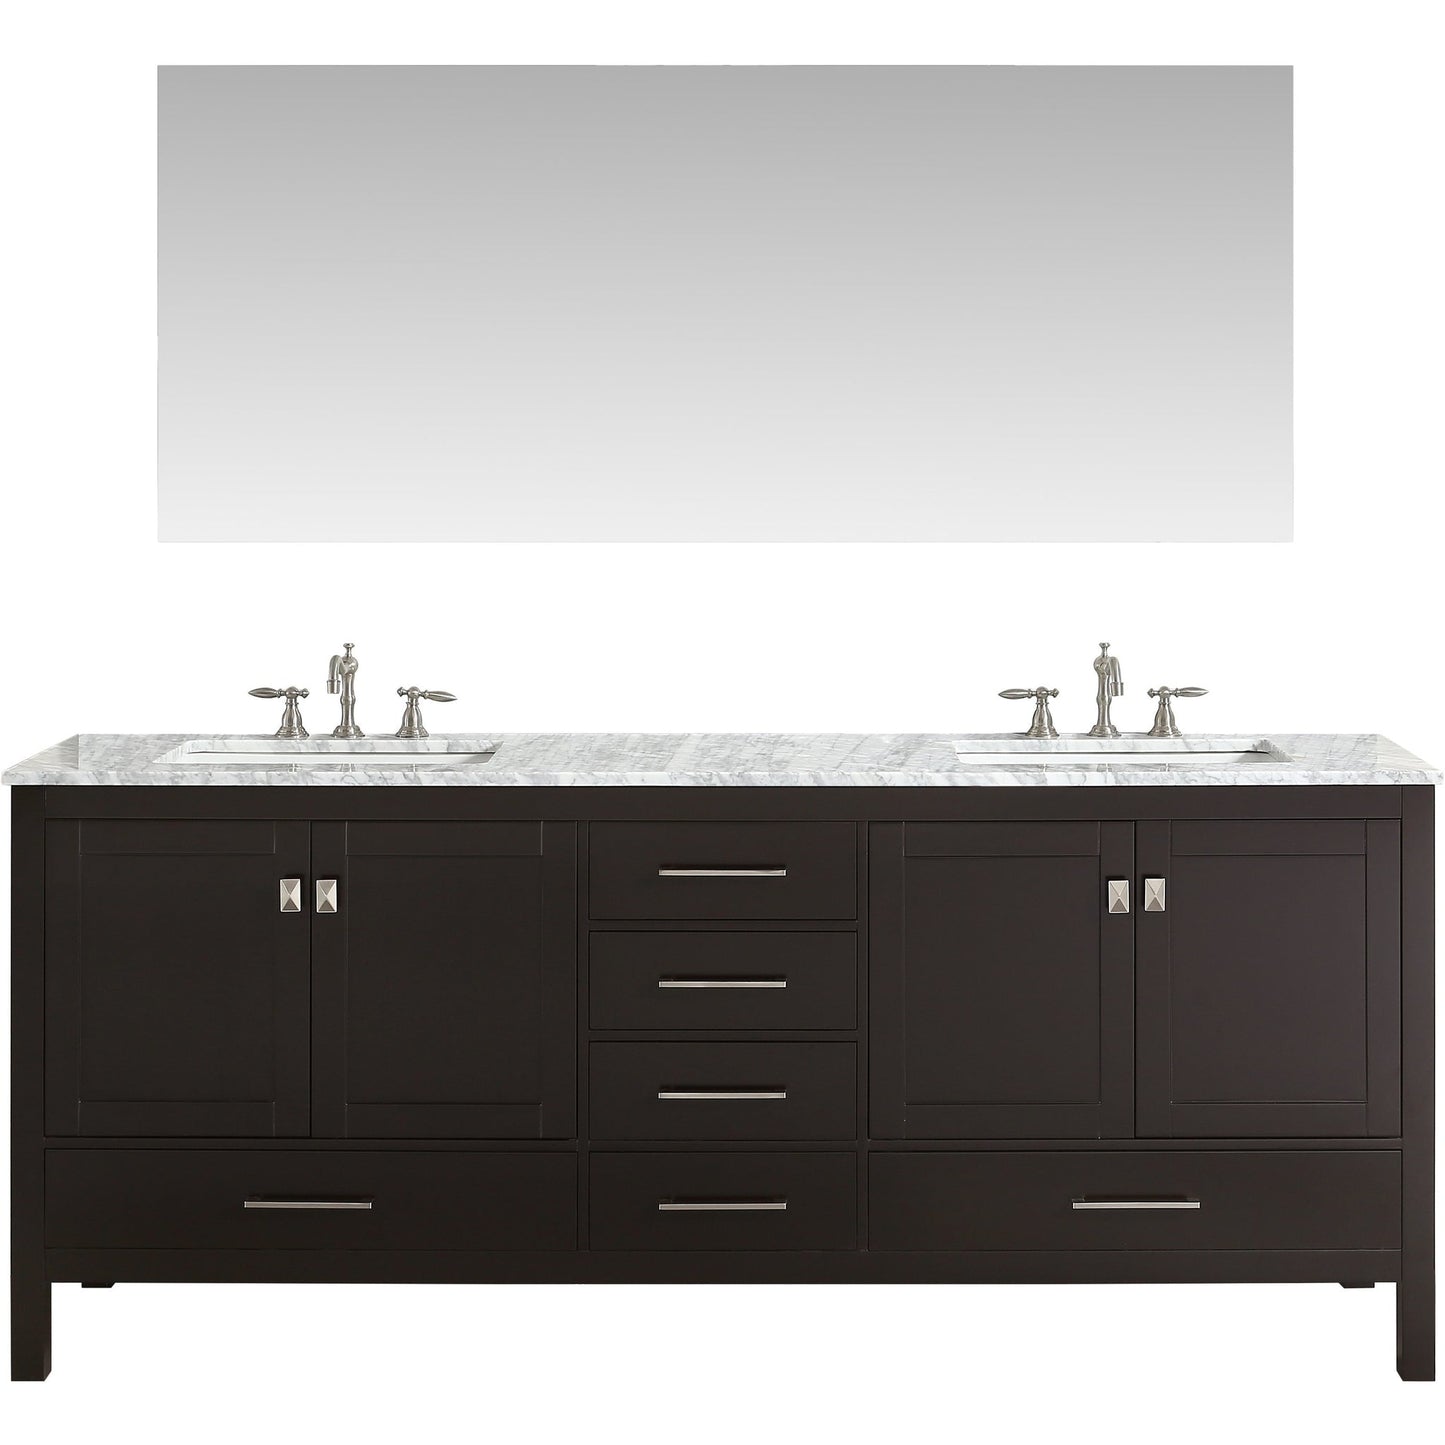 Eviva Aberdeen 84" x 34" Espresso Freestanding Bathroom Vanity With Double Undermount Sink